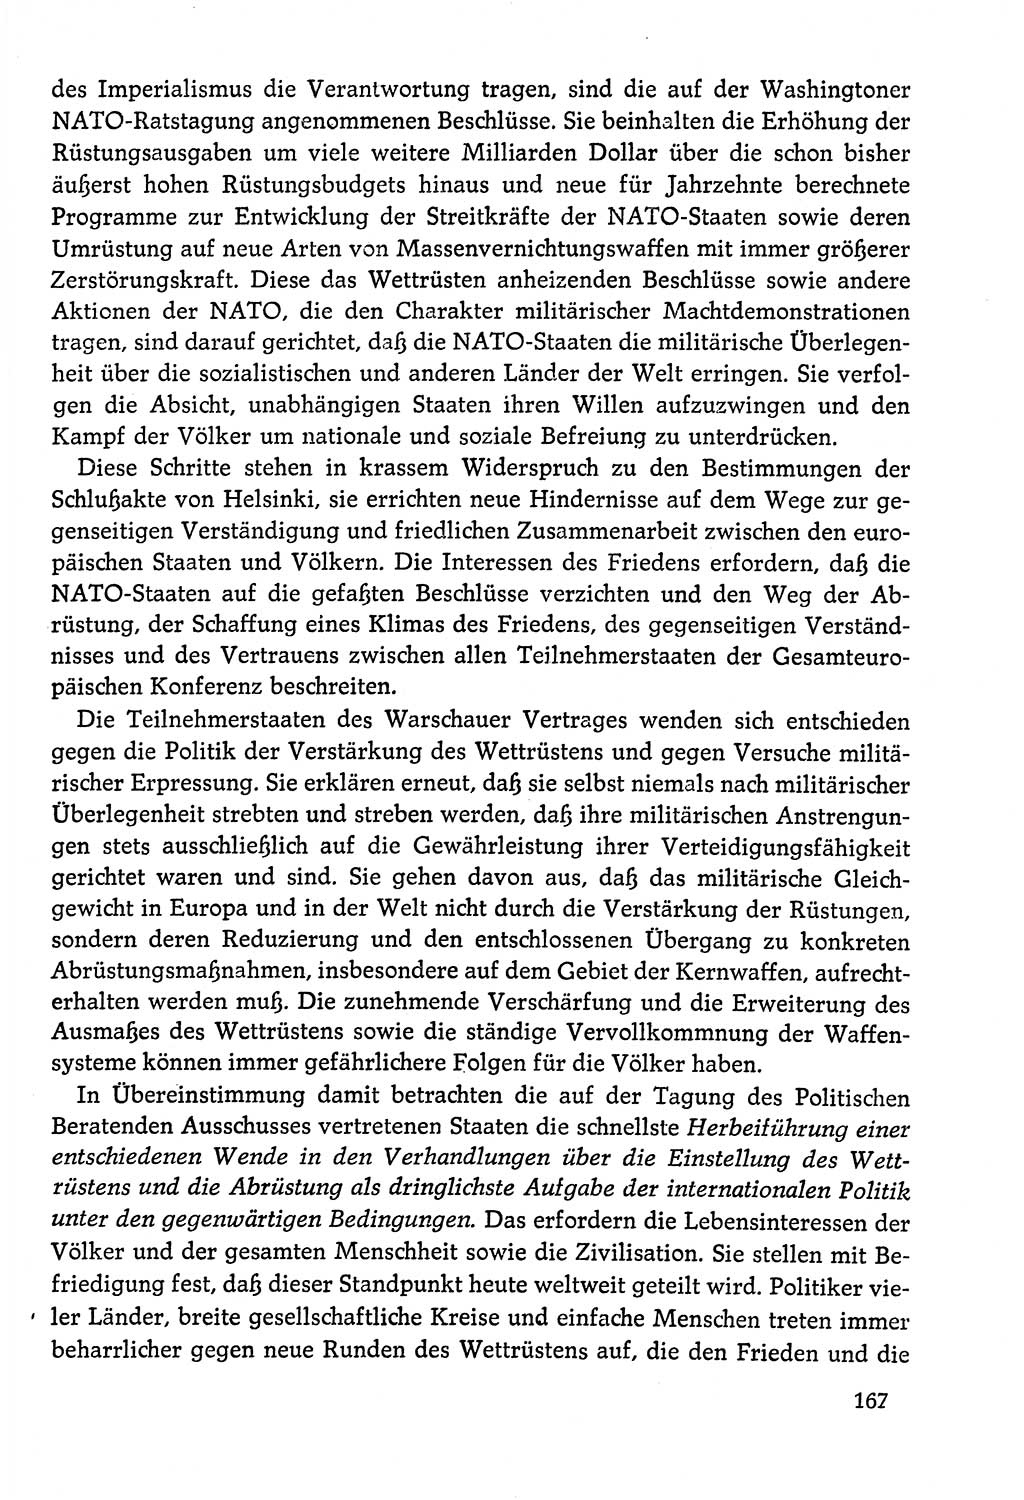 Dokumente der Sozialistischen Einheitspartei Deutschlands (SED) [Deutsche Demokratische Republik (DDR)] 1978-1979, Seite 167 (Dok. SED DDR 1978-1979, S. 167)